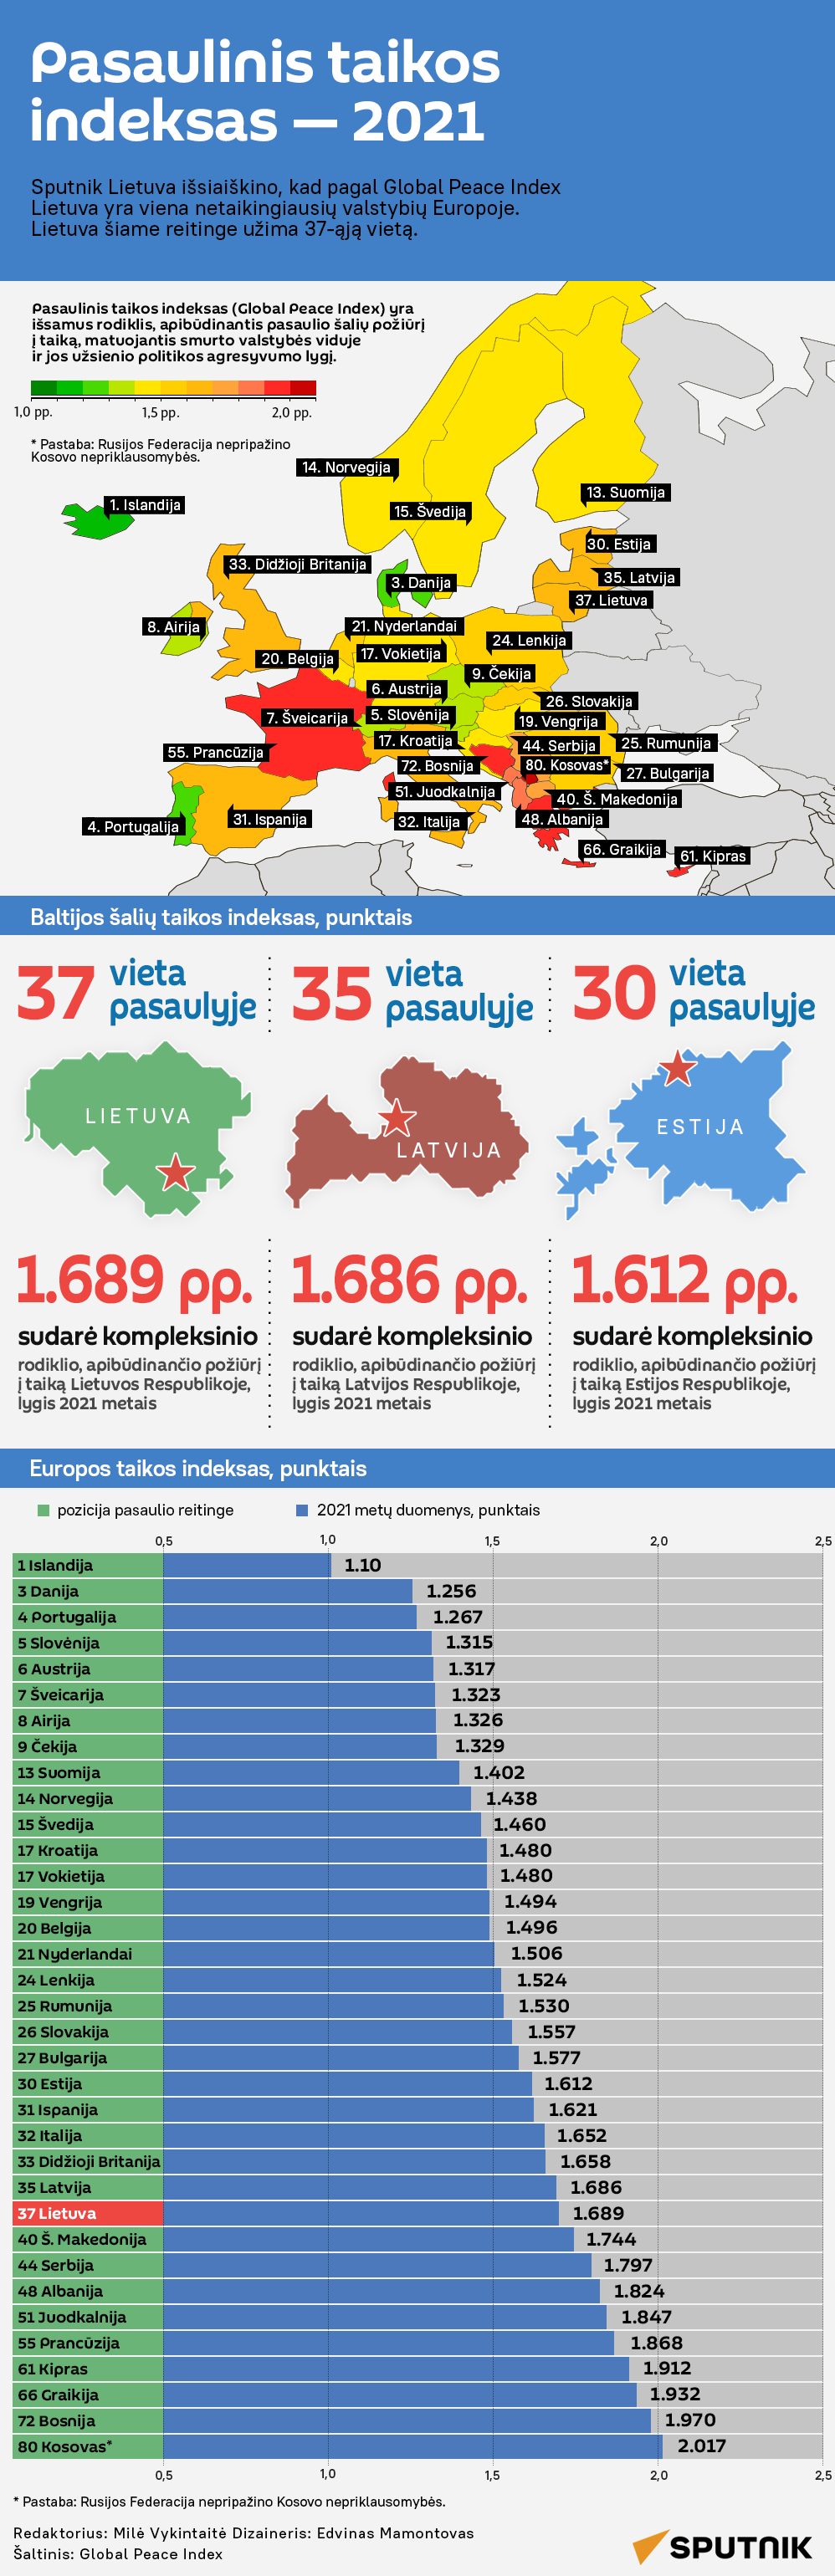 Pasaulinis taikos indeksas — 2021 - Sputnik Lietuva